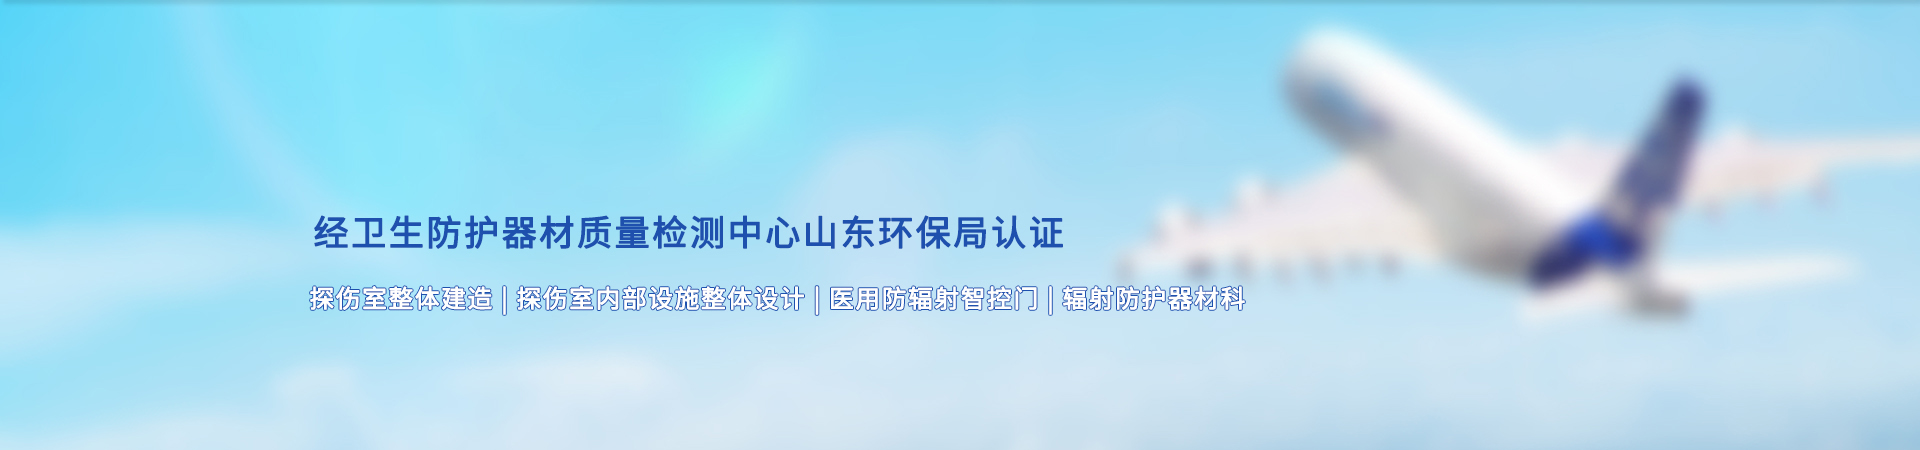 http://www.runshengyang.com/data/images/slide/20190827171911_871.jpg